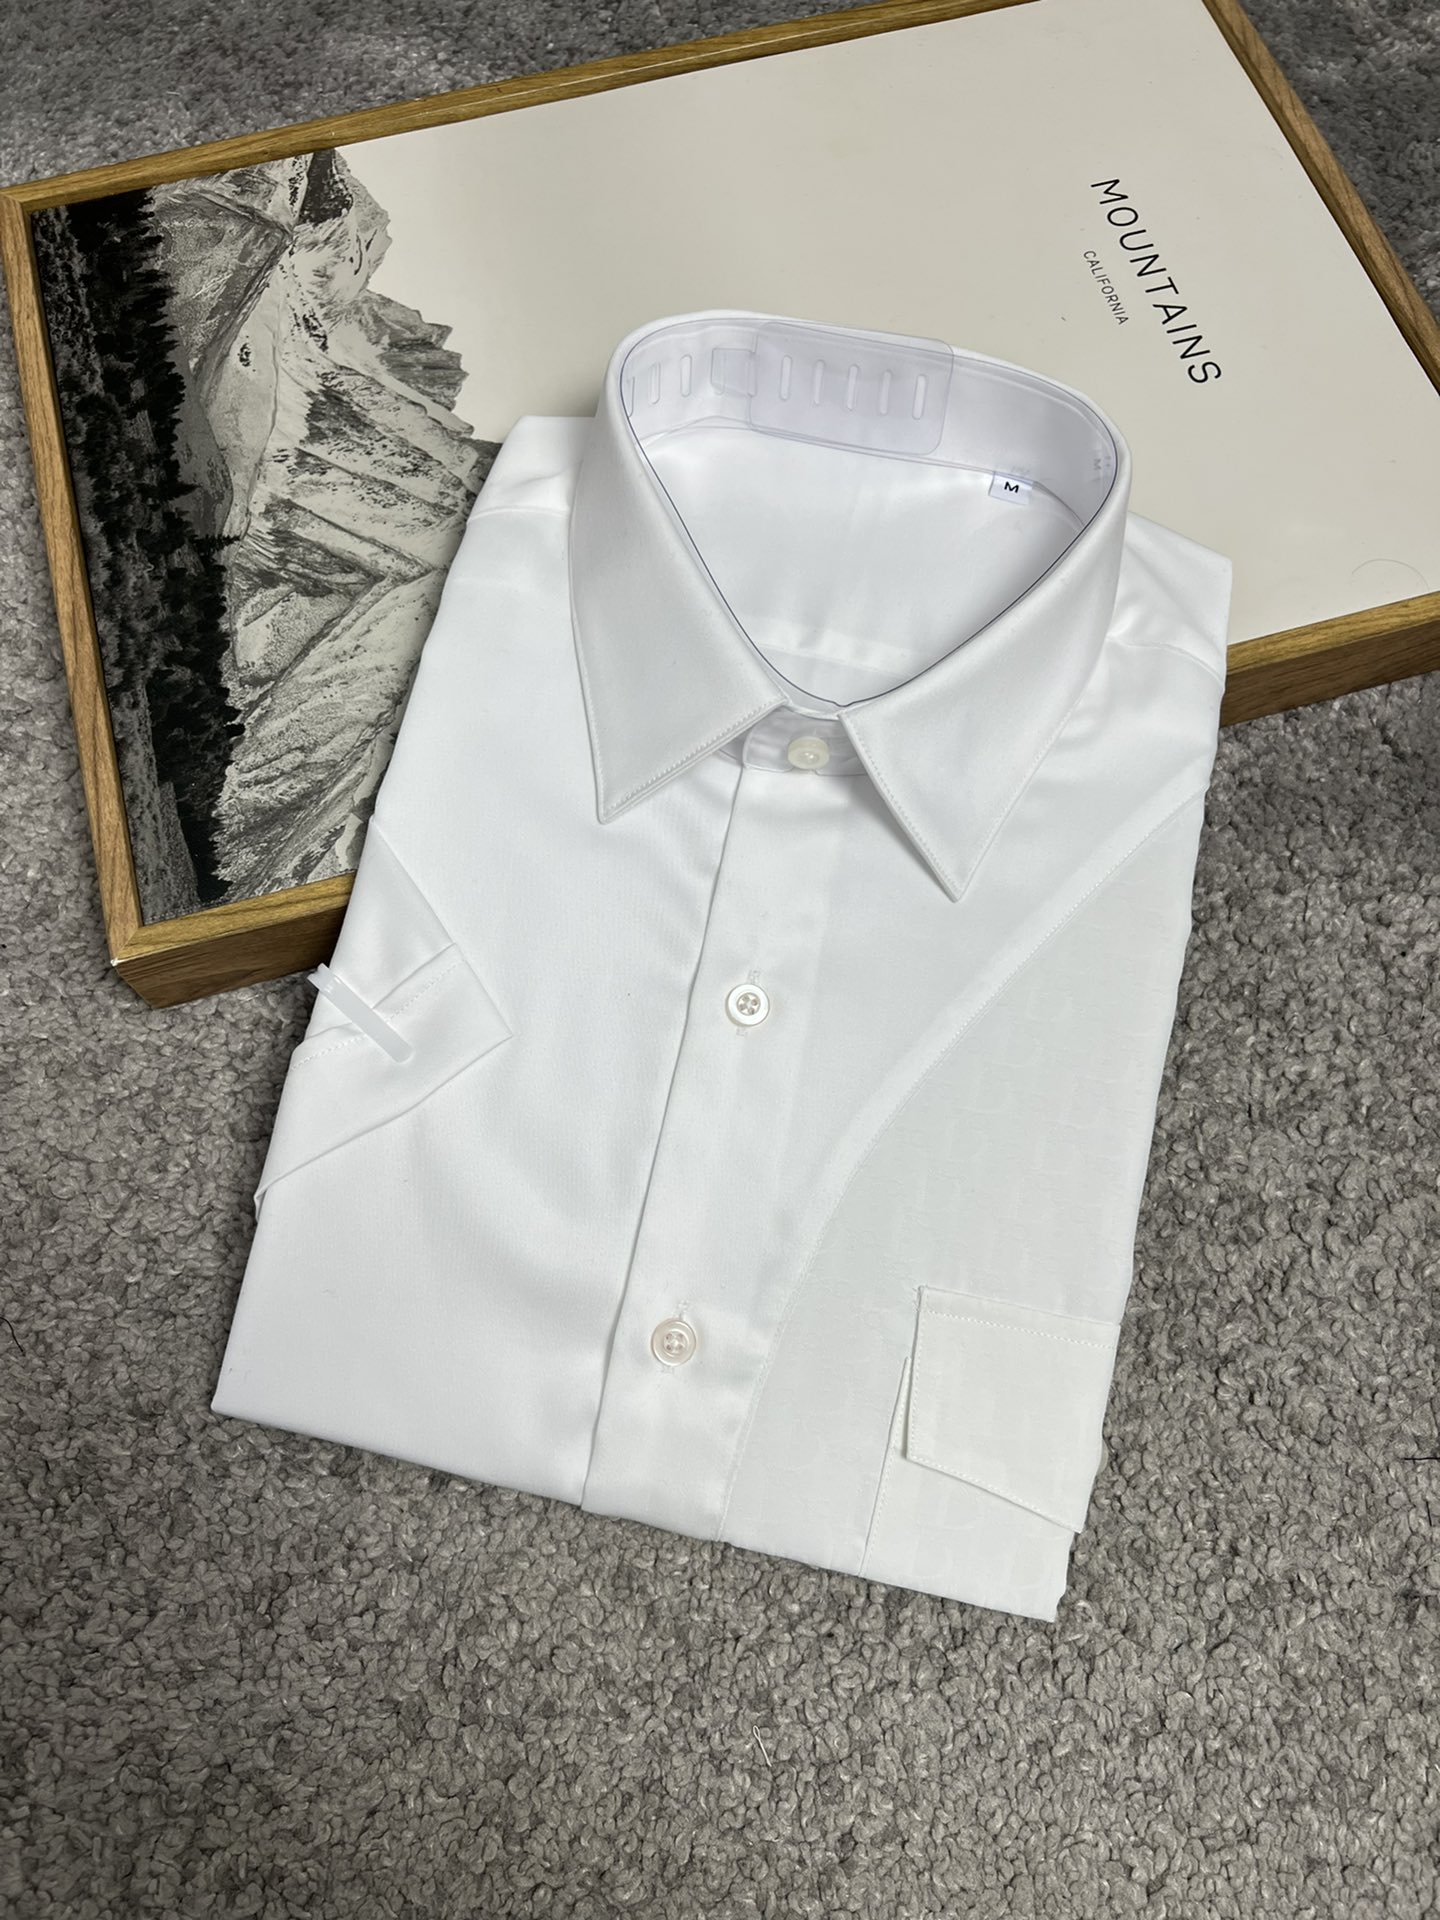 CD迪家24SS春夏新款短袖衬衫拼接设计高端系列黑色白色S,M,L,XL,XXL